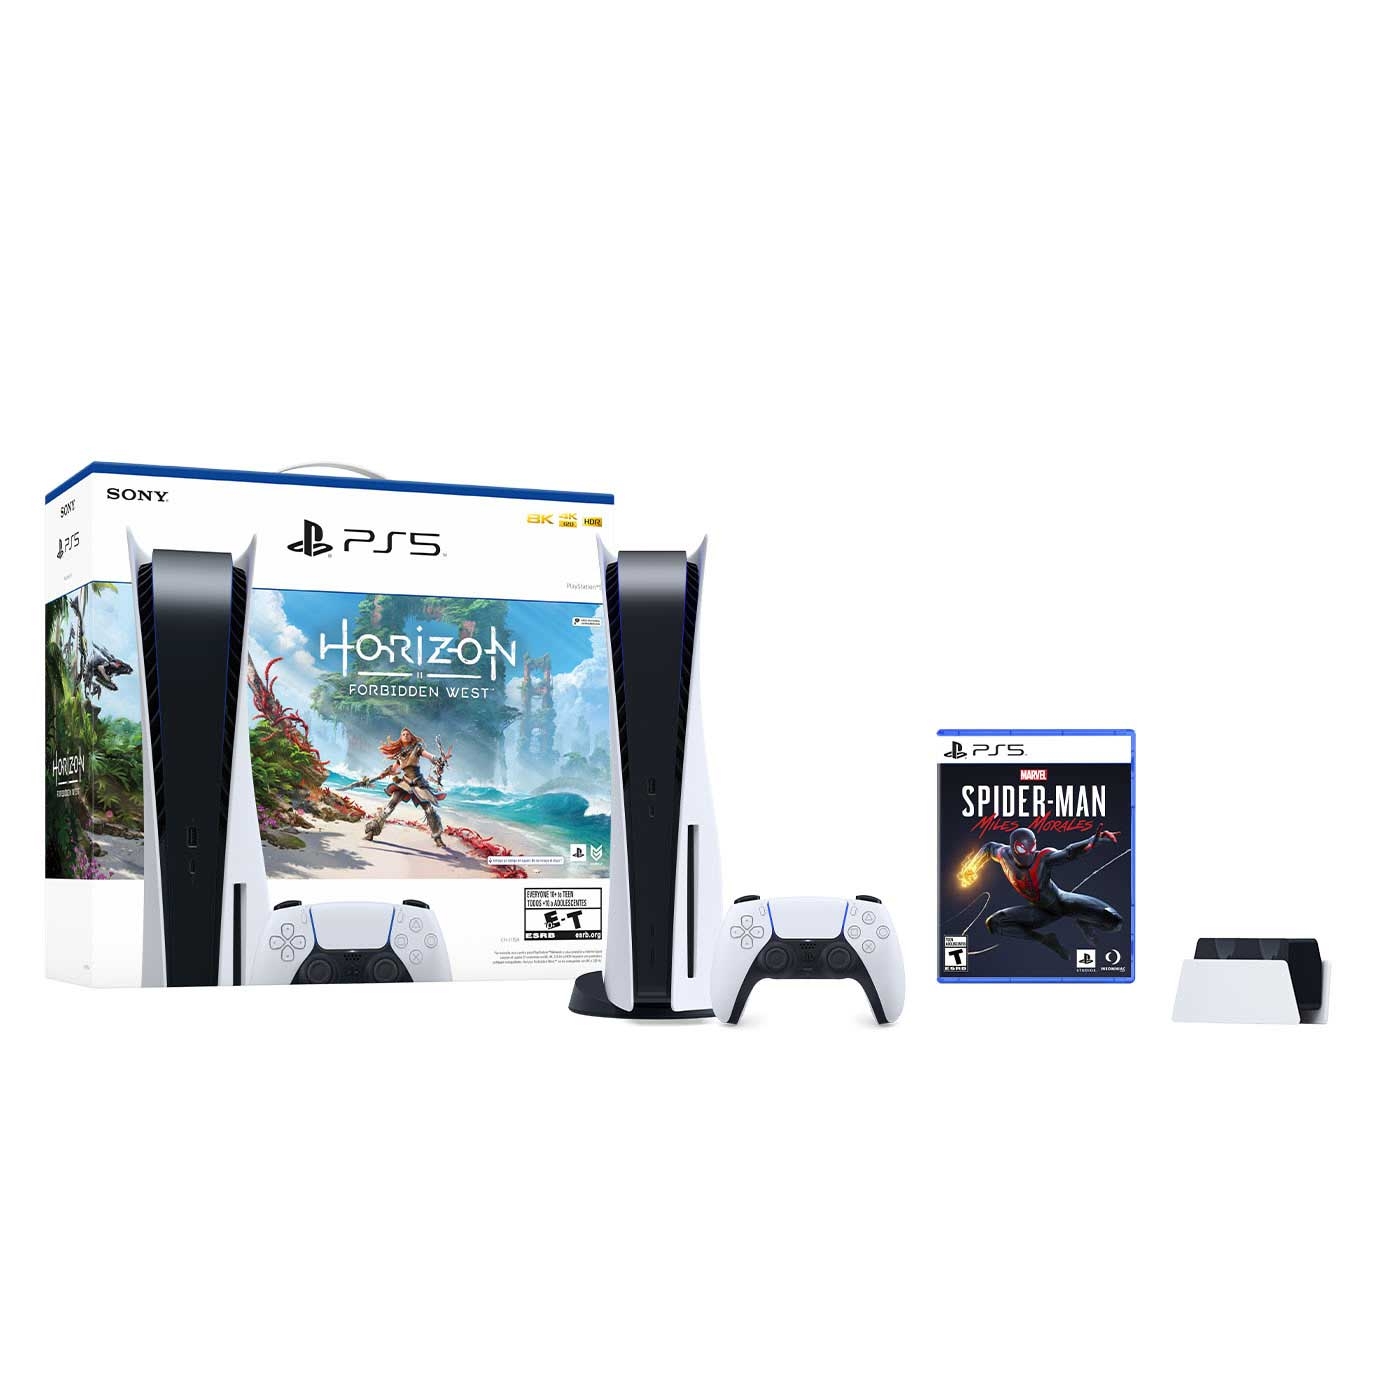 Consola PS5 Estándar 825GB + 1 Control Dualsense + JuegoPS5SpidermanMiles Morales + Cargador Control + Voucher para descargar Juego Digital Horizon 